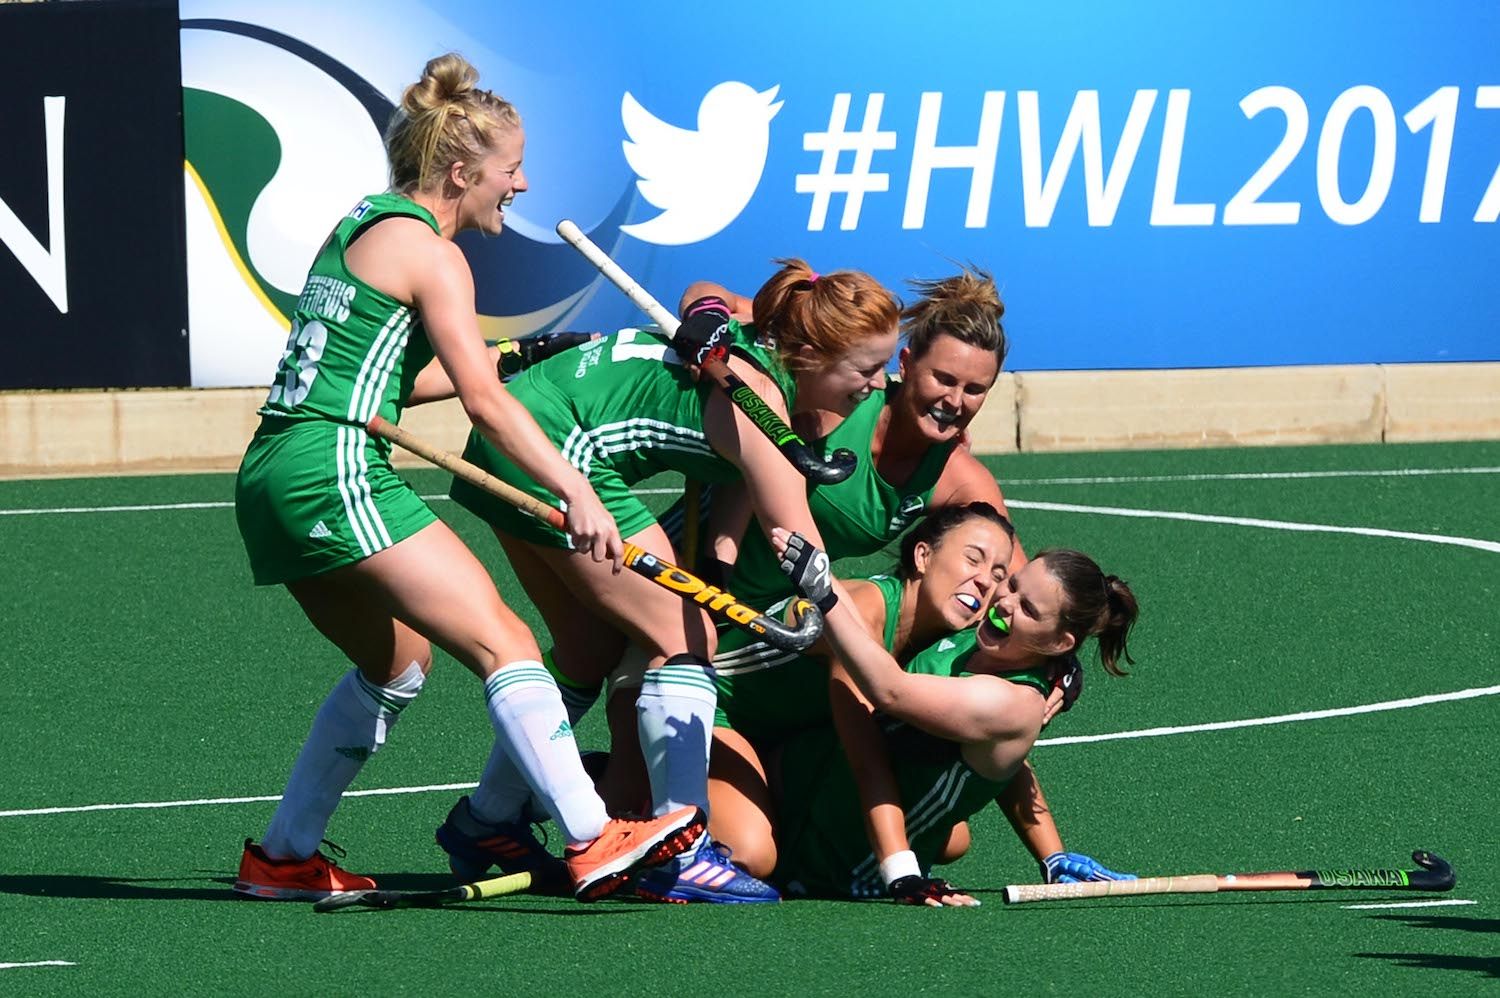 Irish women’s hockey, finally making history